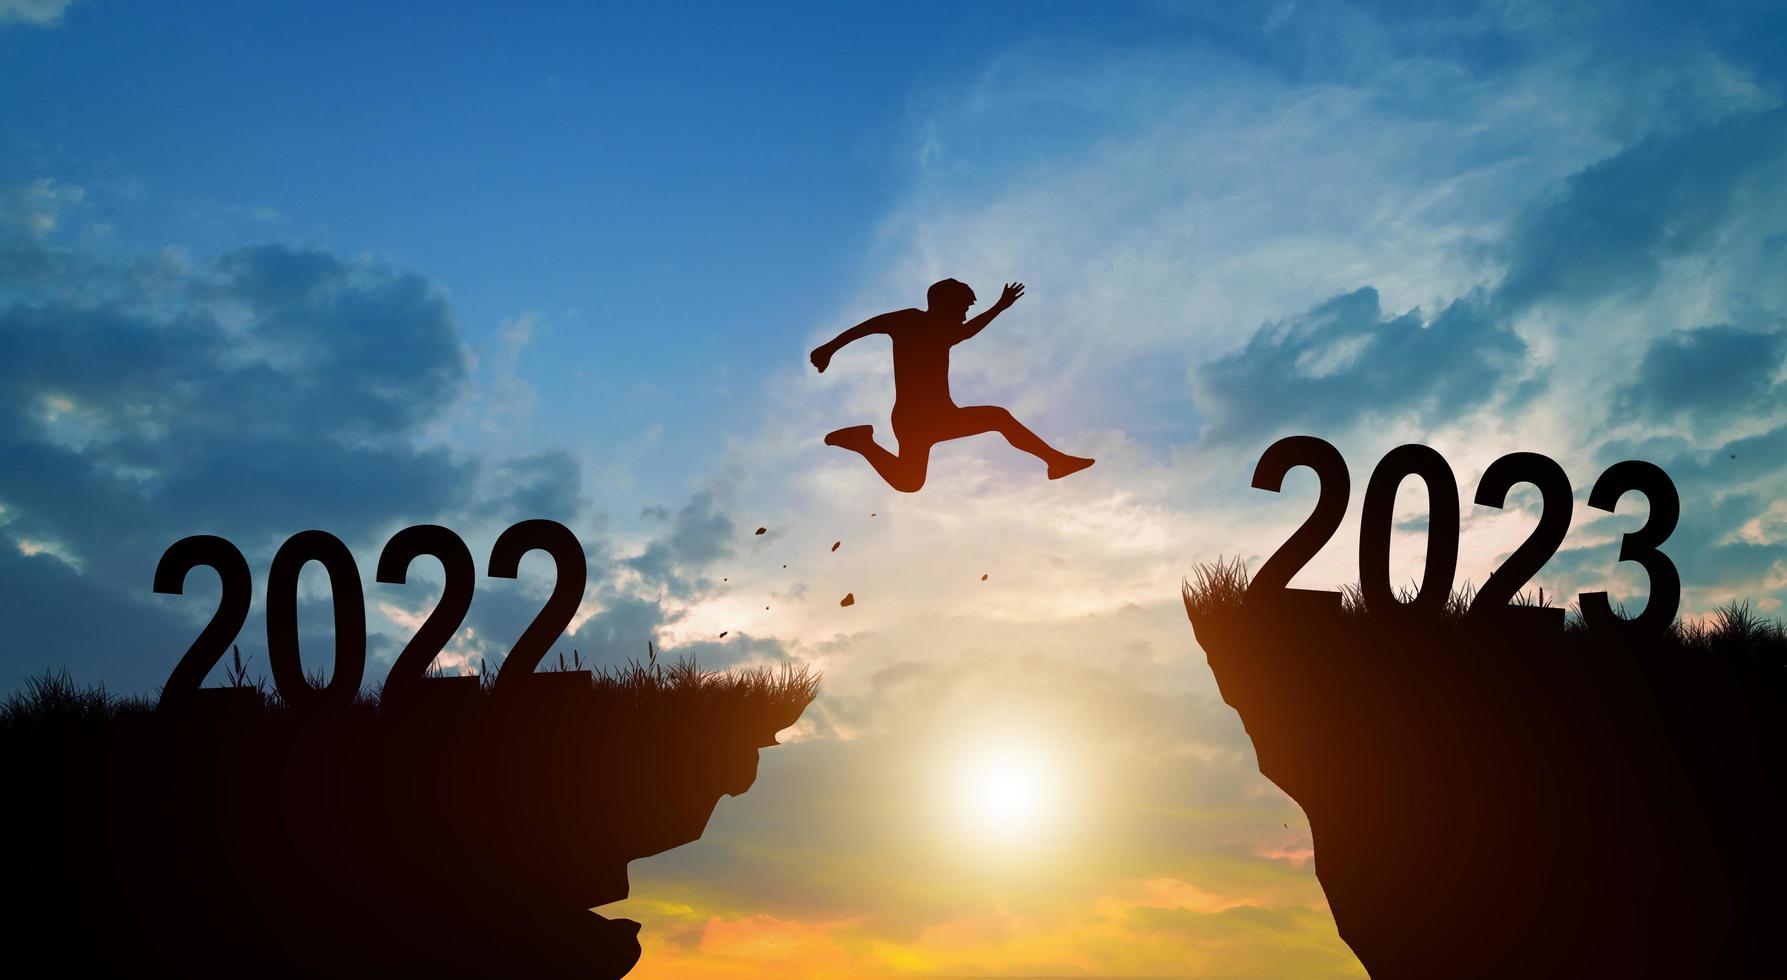 bienvenido feliz navidad y feliz año nuevo en 2023 con hombre saltando. foto